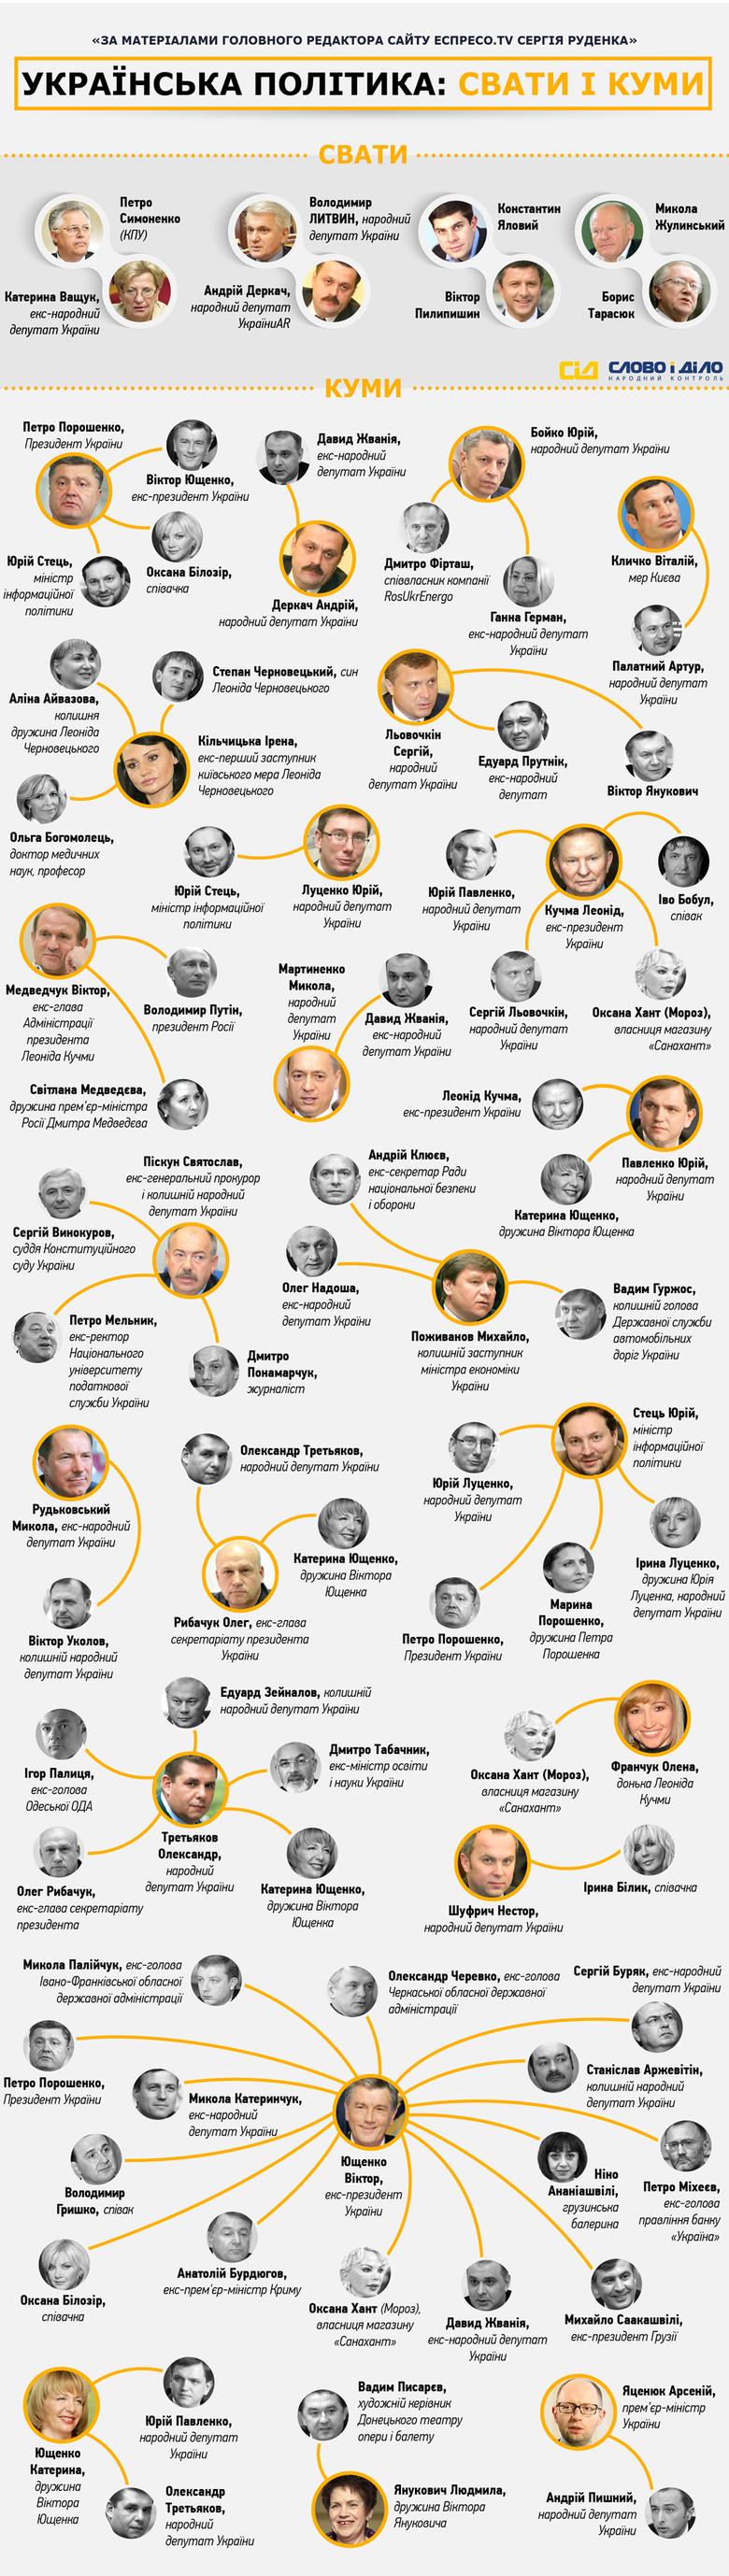 Журналісти «Слова і Діла» вирішили візуалізувати матеріал головного редактора сайту «Еспресо.TV» Сергія Руденка, який склав список некровних зв'язків в українській політиці.